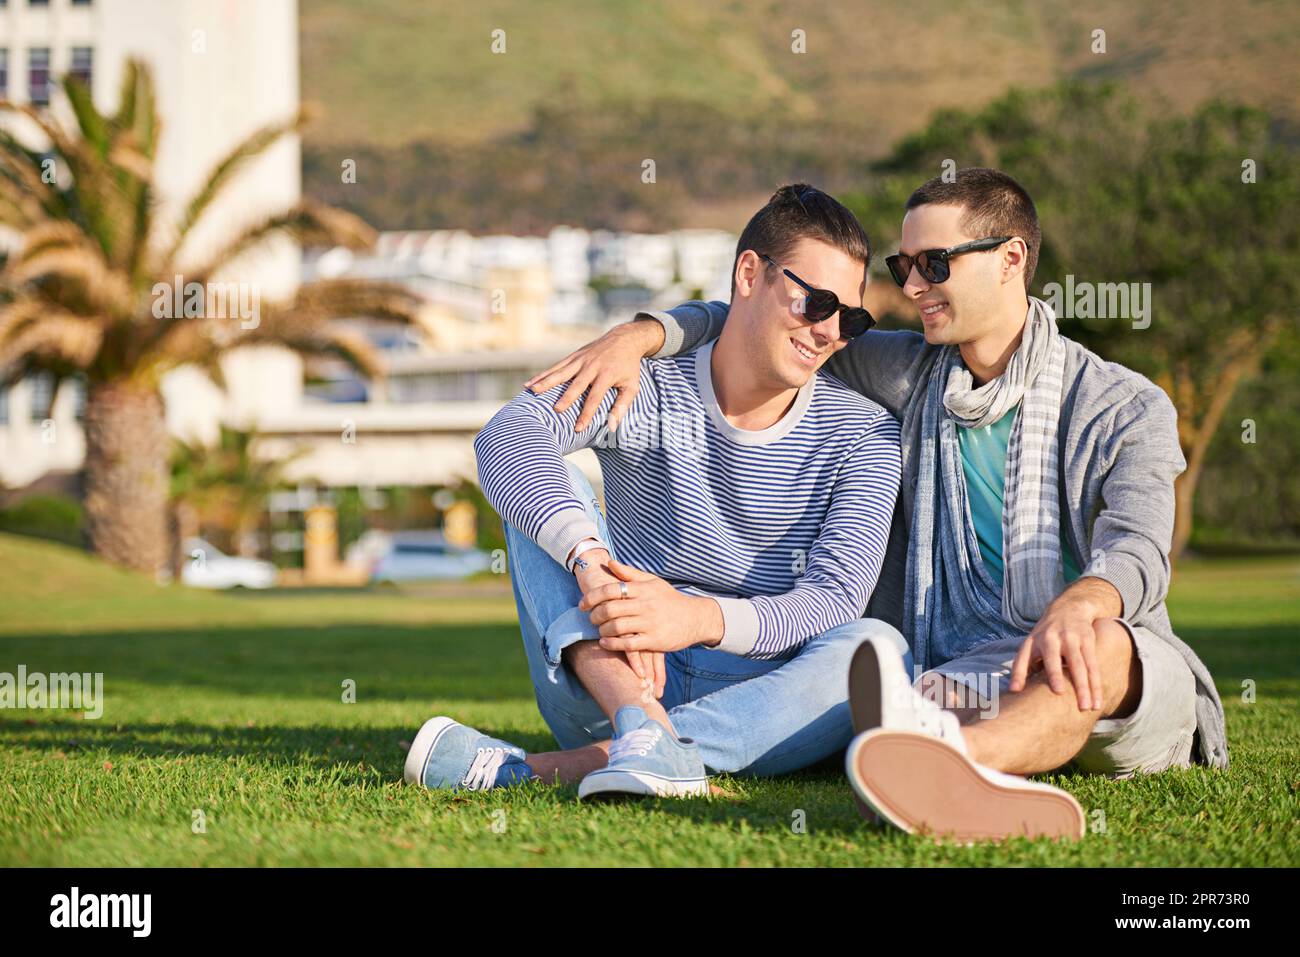 Une autre journée parfaite ensemble. Photo d'un jeune couple gay qui profite de leur journée ensemble à l'extérieur. Banque D'Images